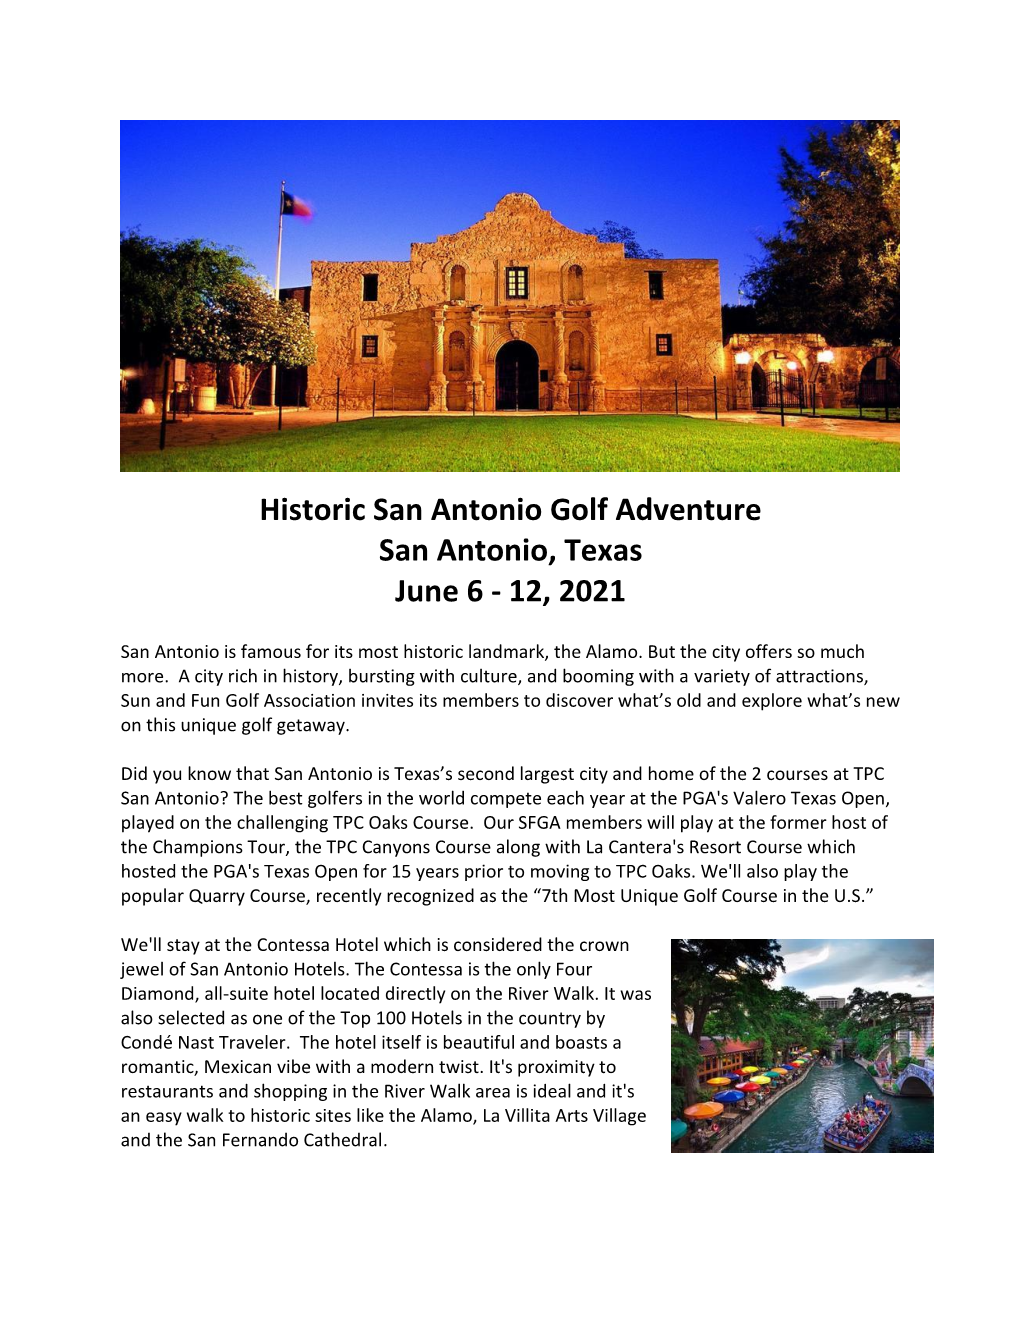 Historic San Antonio Golf Adventure San Antonio, Texas June 6 - 12, 2021